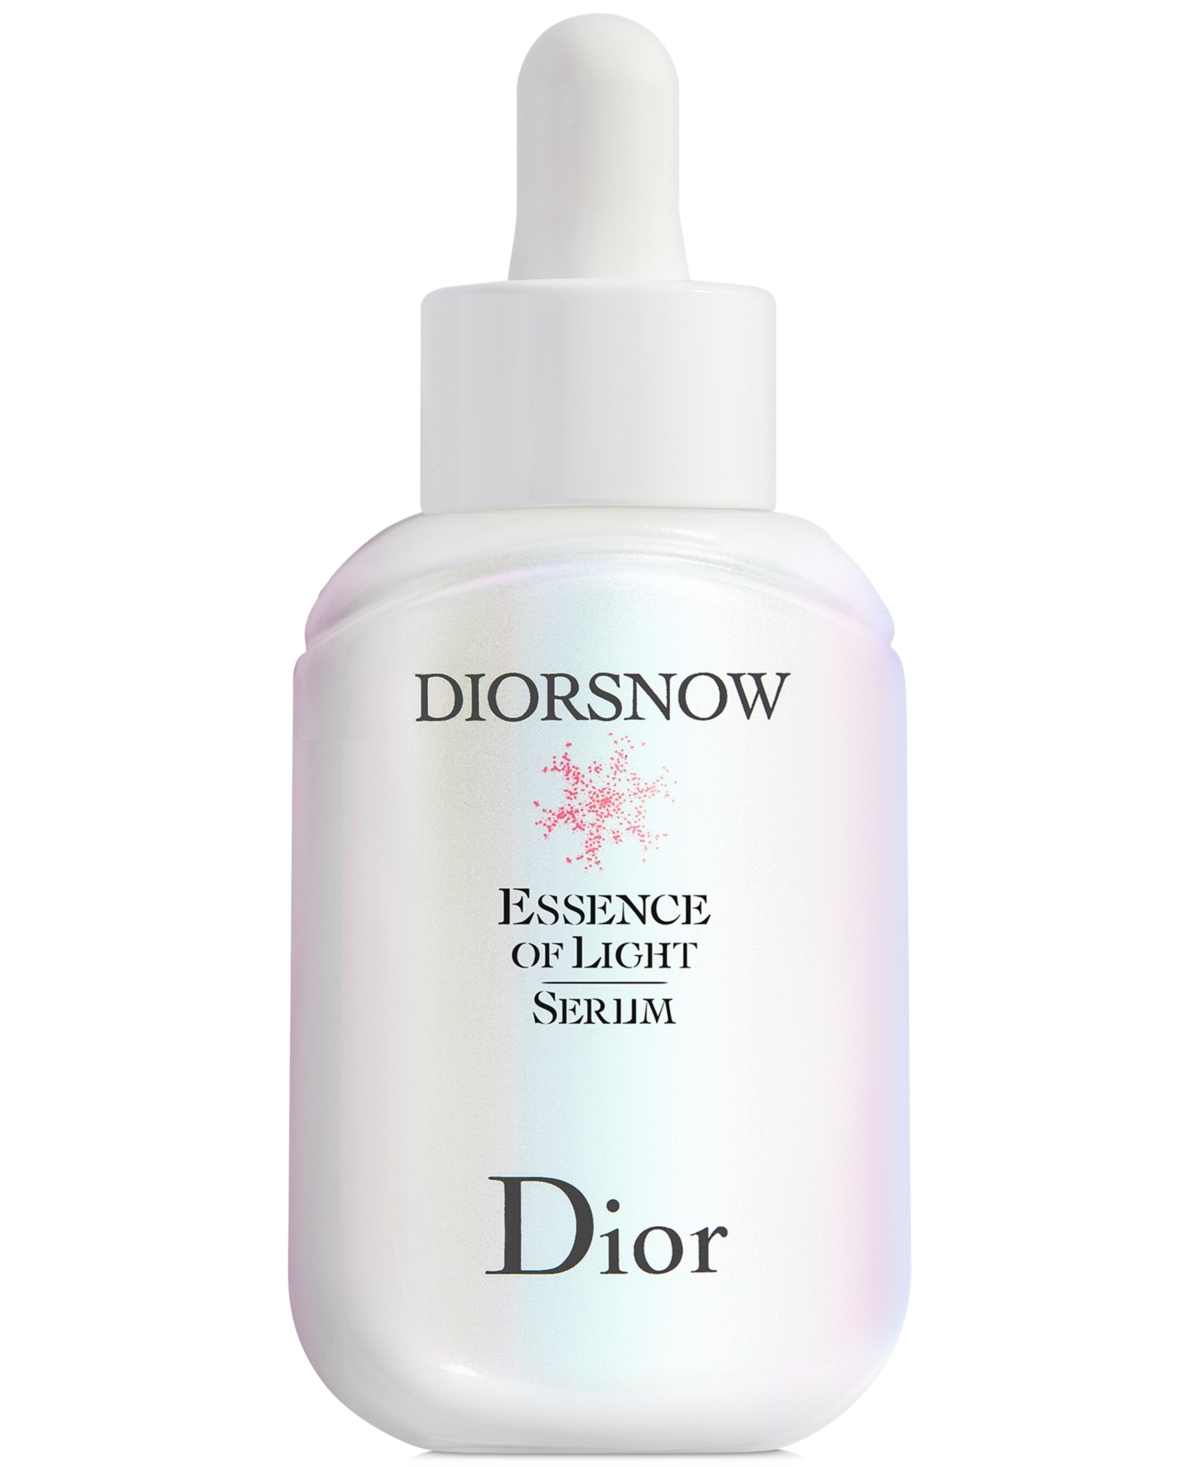 Dior Snow Essence Of Light Serum, 1-oz. In No Color